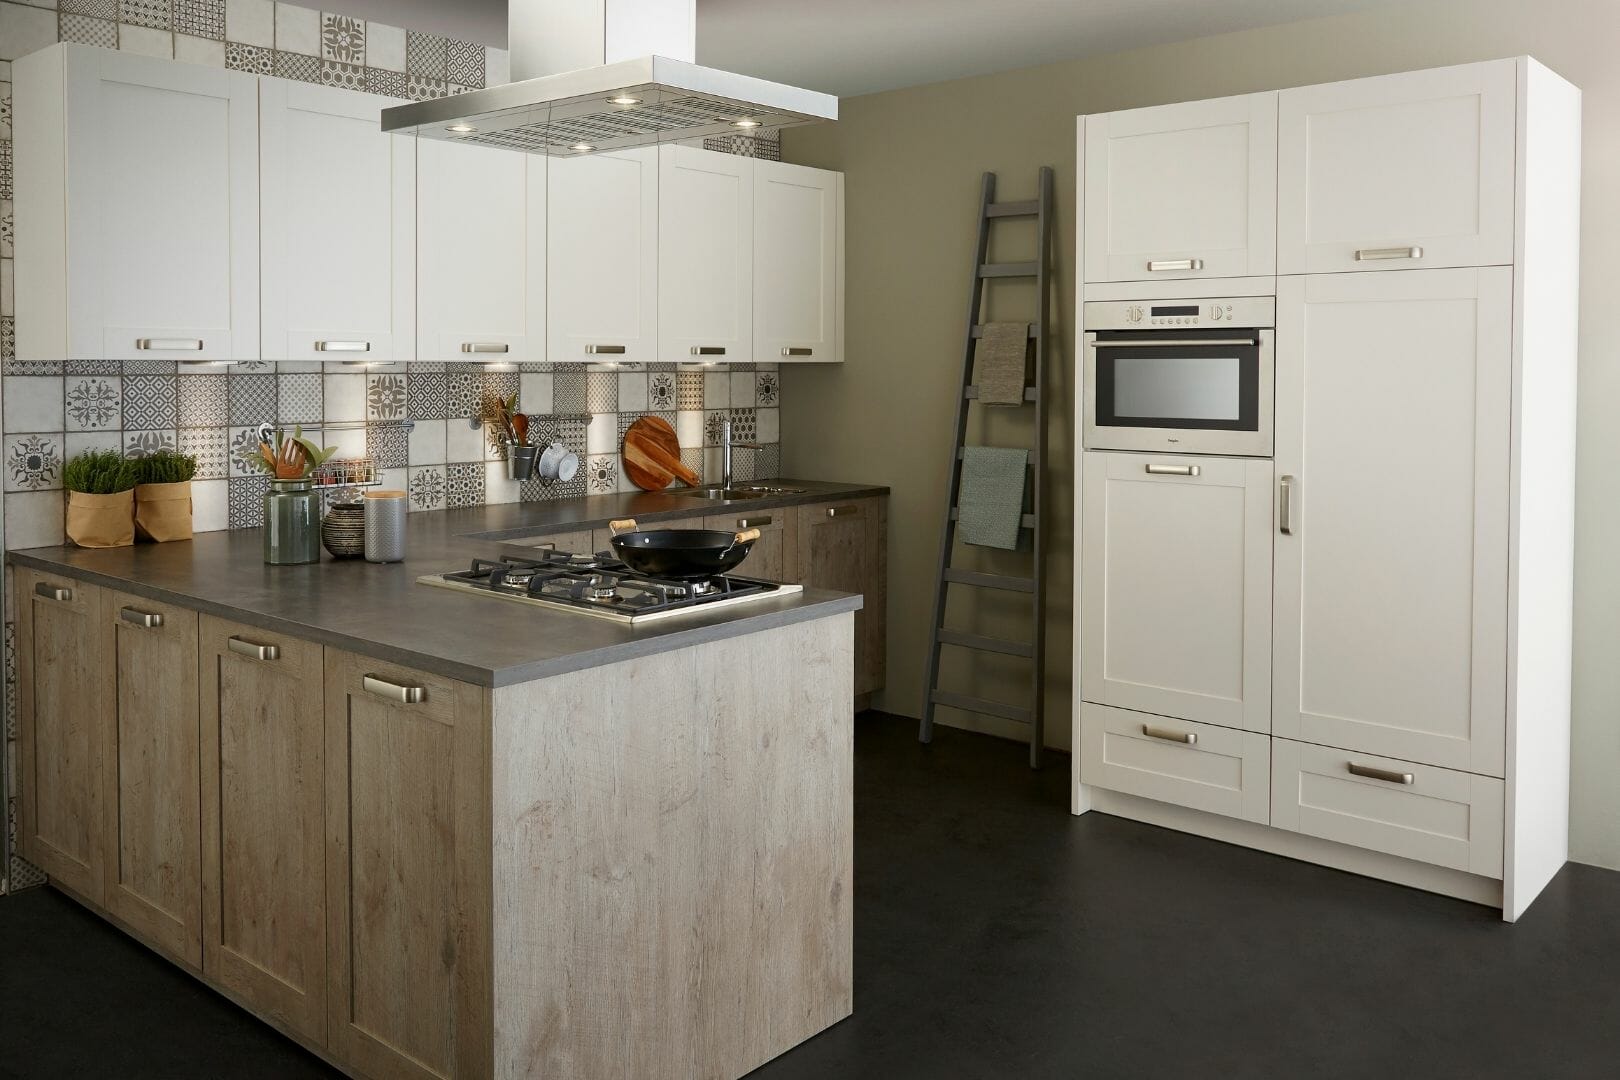 Wooden and white modern kitchen